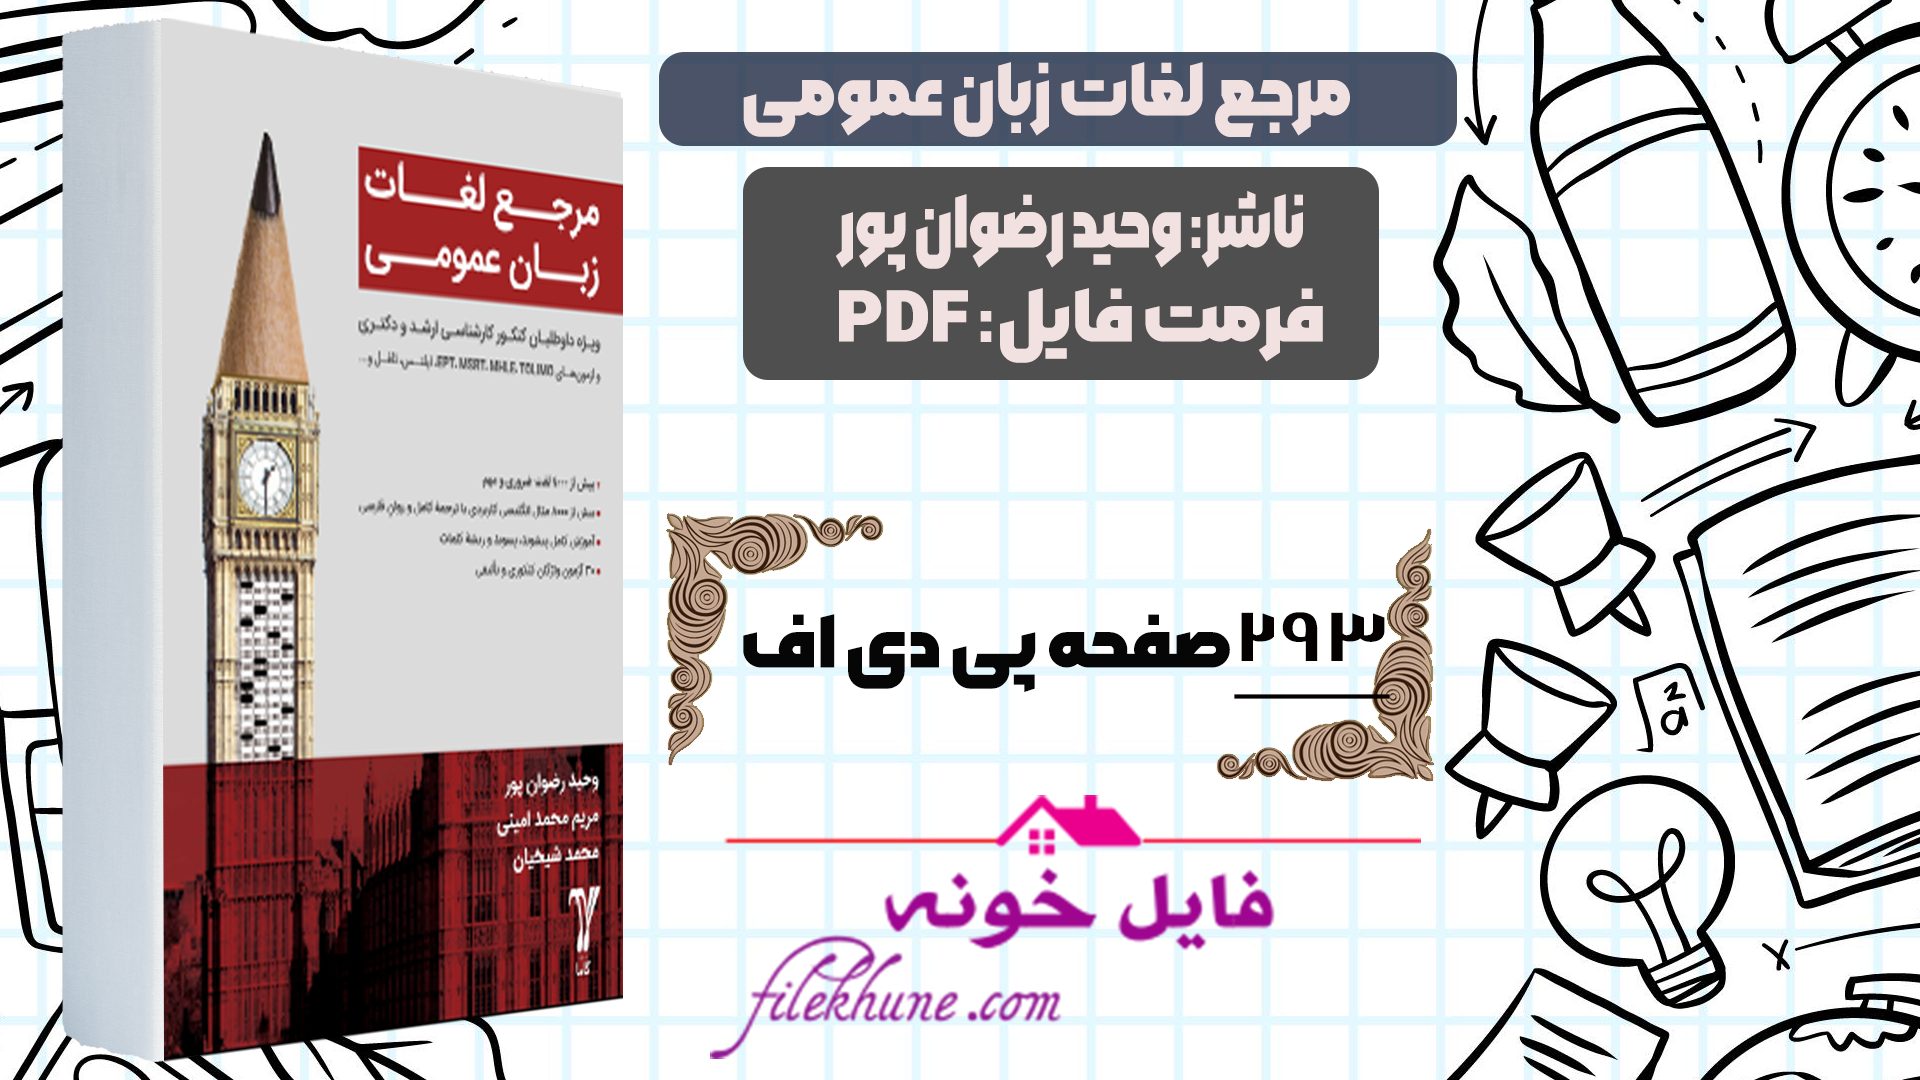 دانلود کتاب مرجع لغات زبان عمومی وحید رضوان پور PDF